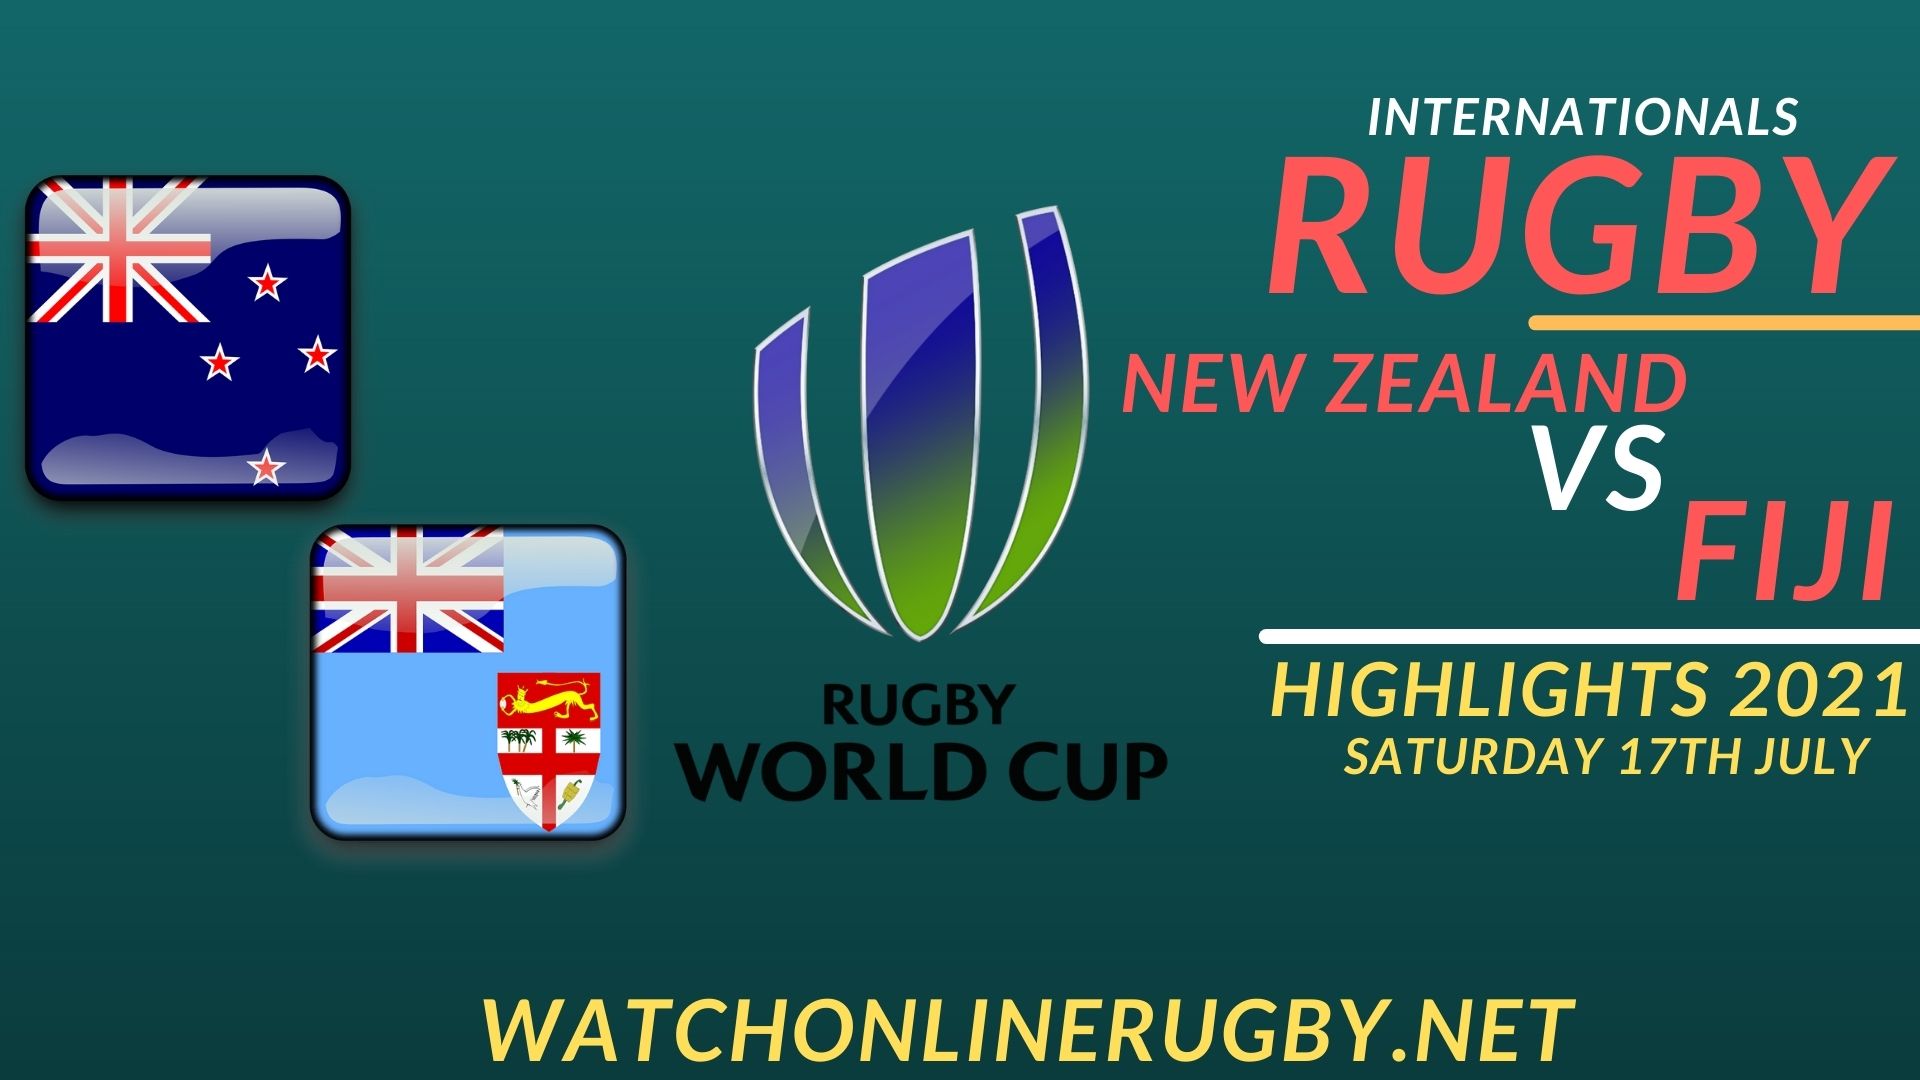 New Zealand Vs Fiji International Rugby 2021